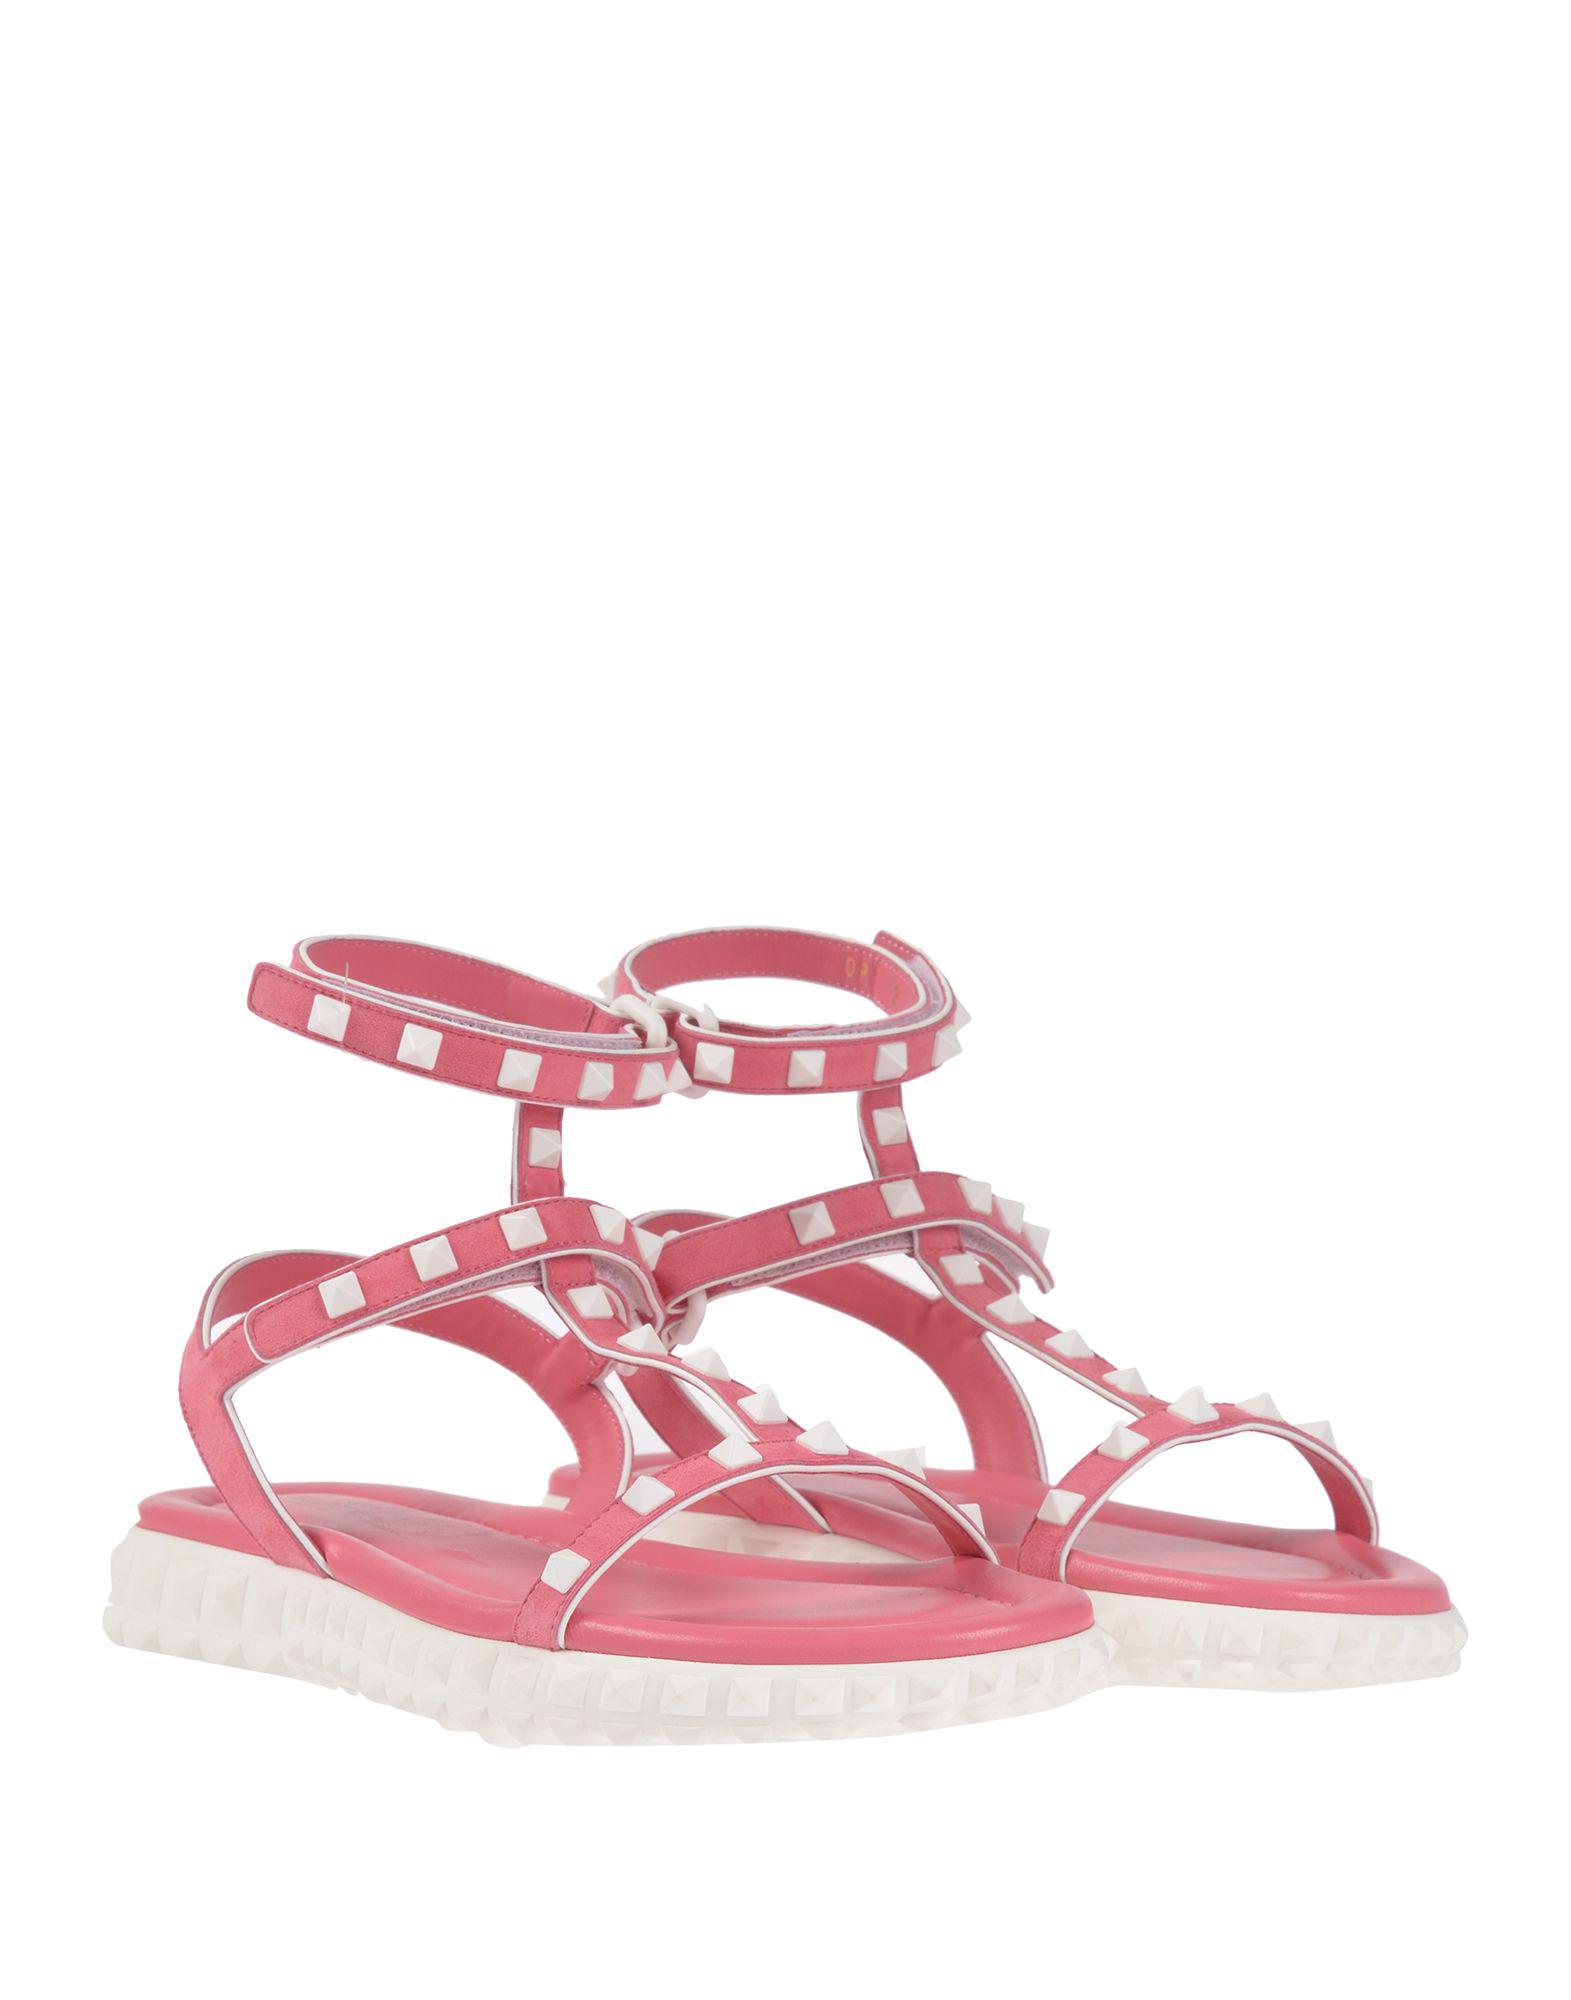 Valentino Garavani Leather Sandals in Pink - Lyst